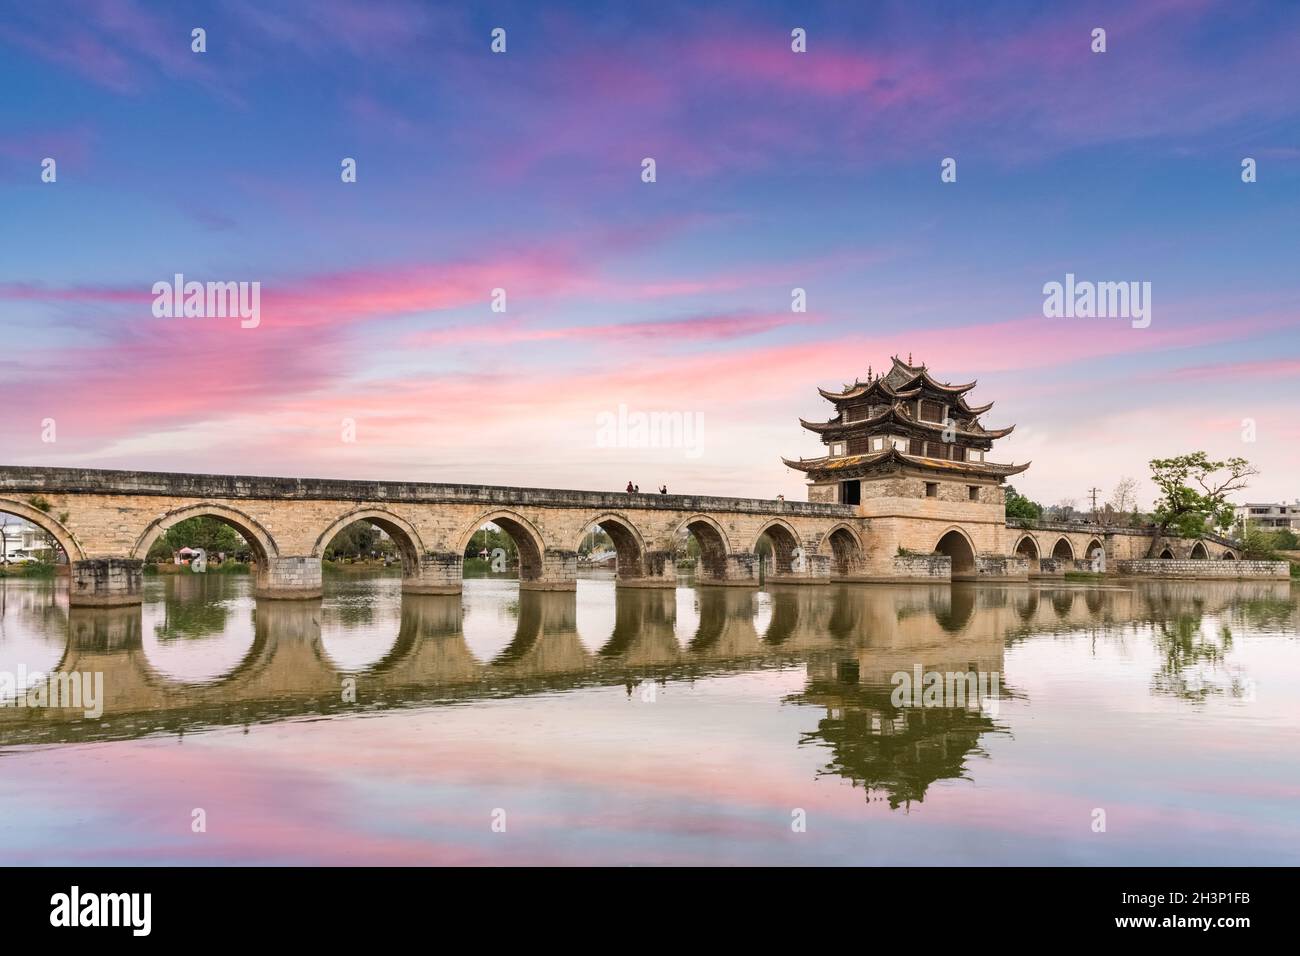 Yunnan double dragon bridge in twilight Stock Photo